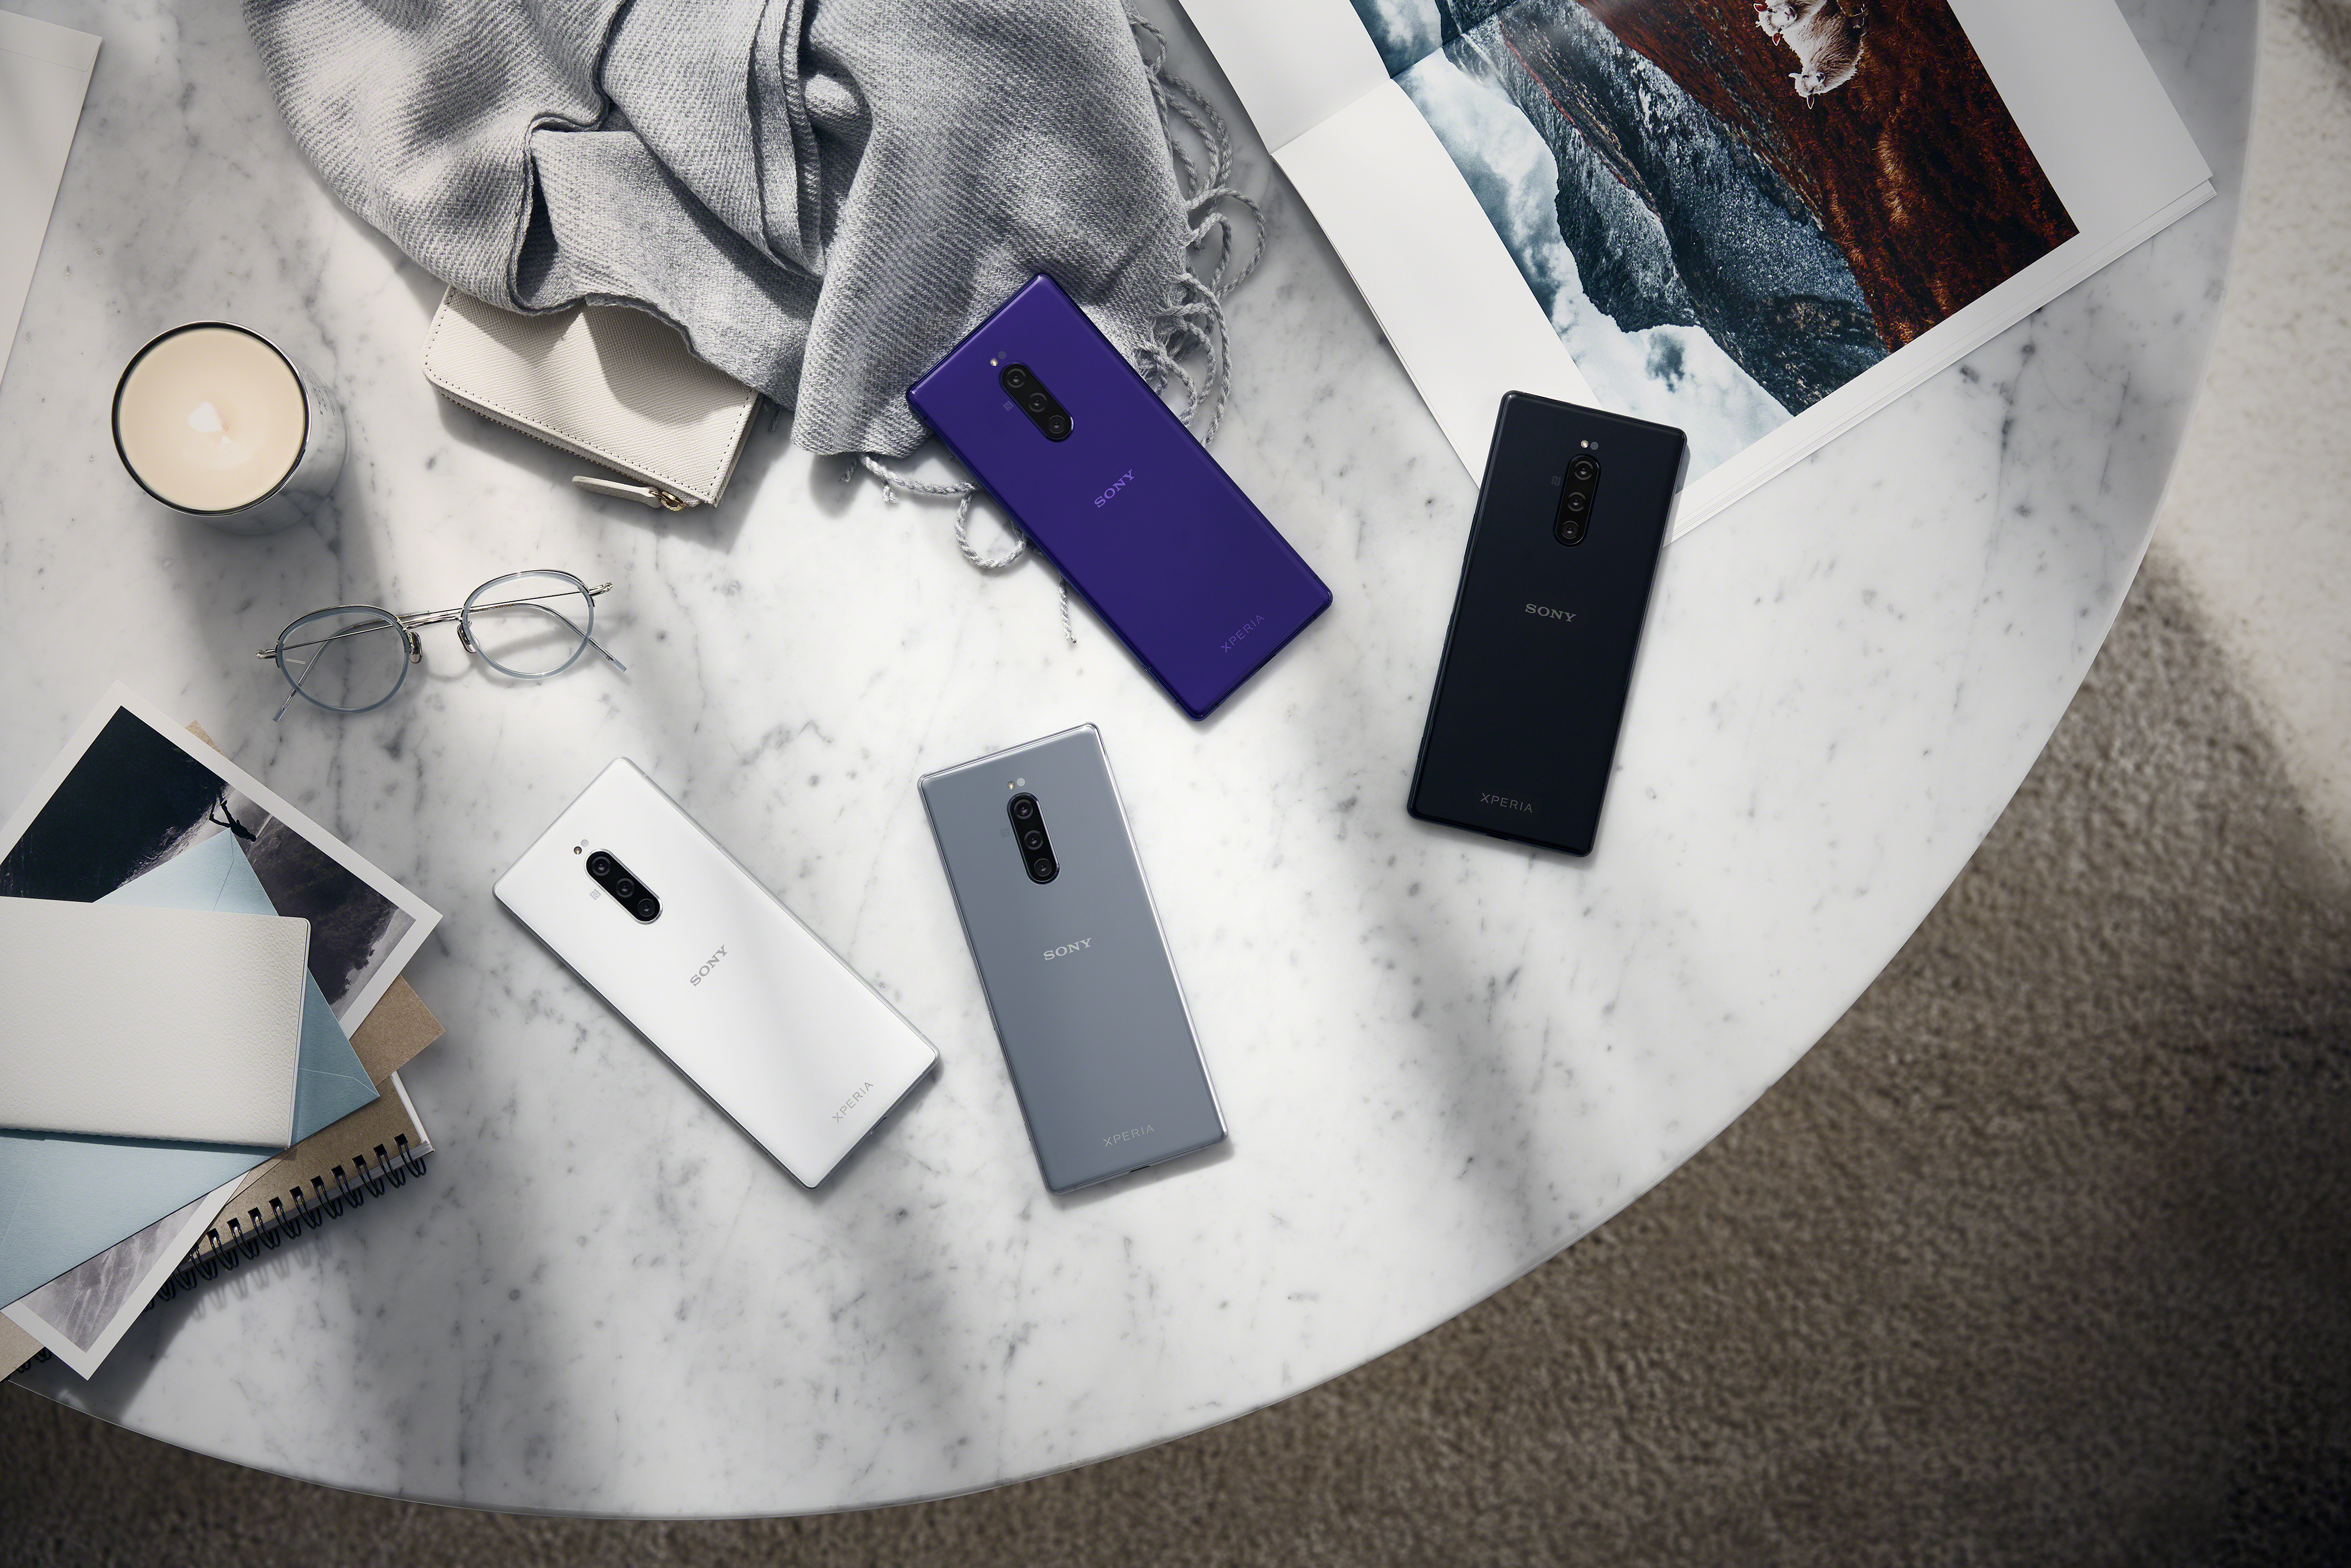 Sony Xperia 5 mit LTE bei yourfone für 0 EUR Einmalzahlung – Sony Kopfhörer im Wert von 249 EUR kostenfrei dabei